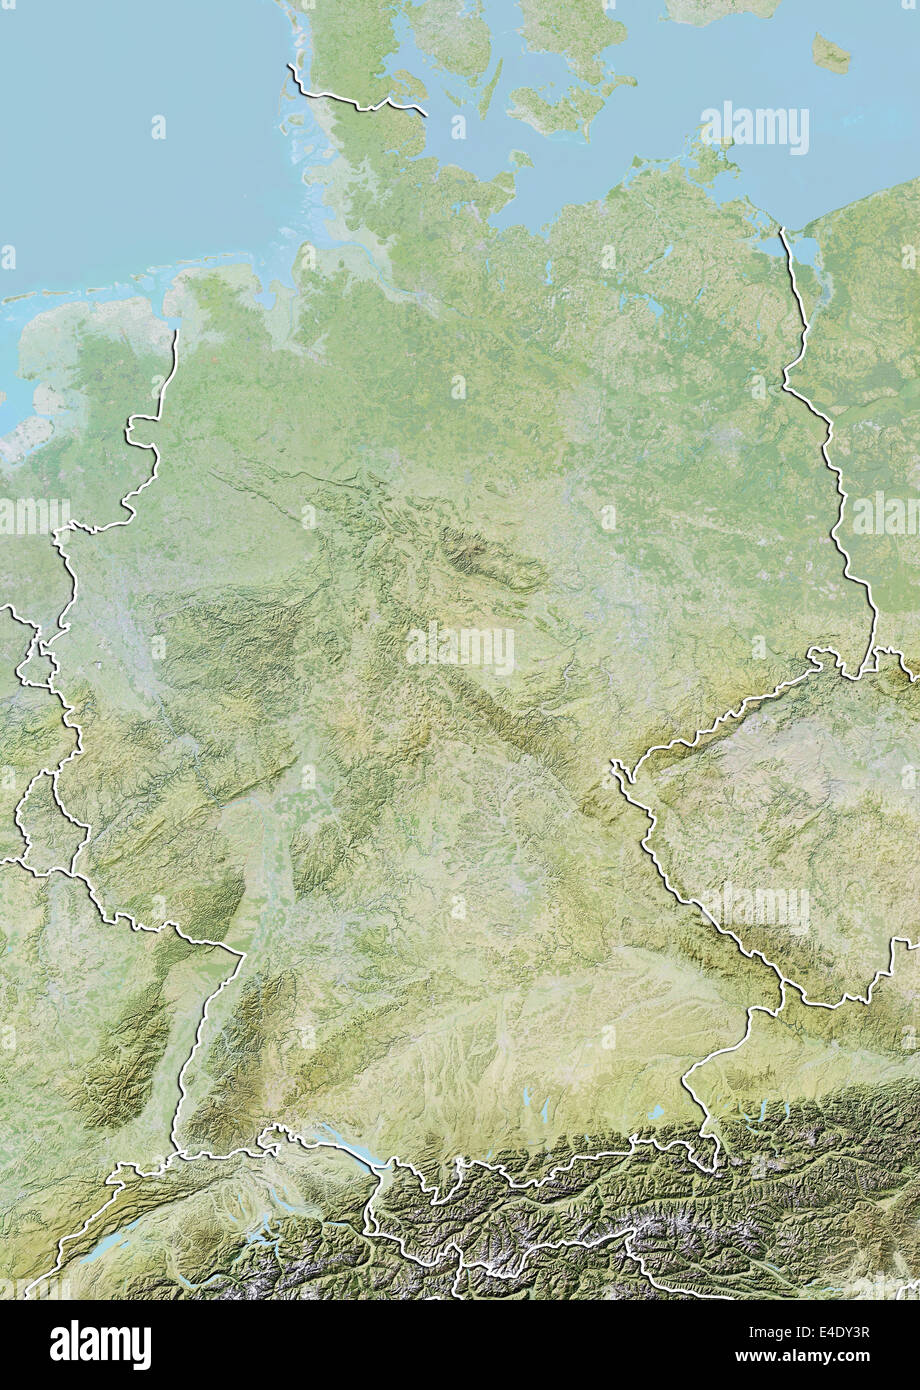 Alemania, Mapa en relieve con borde Foto de stock